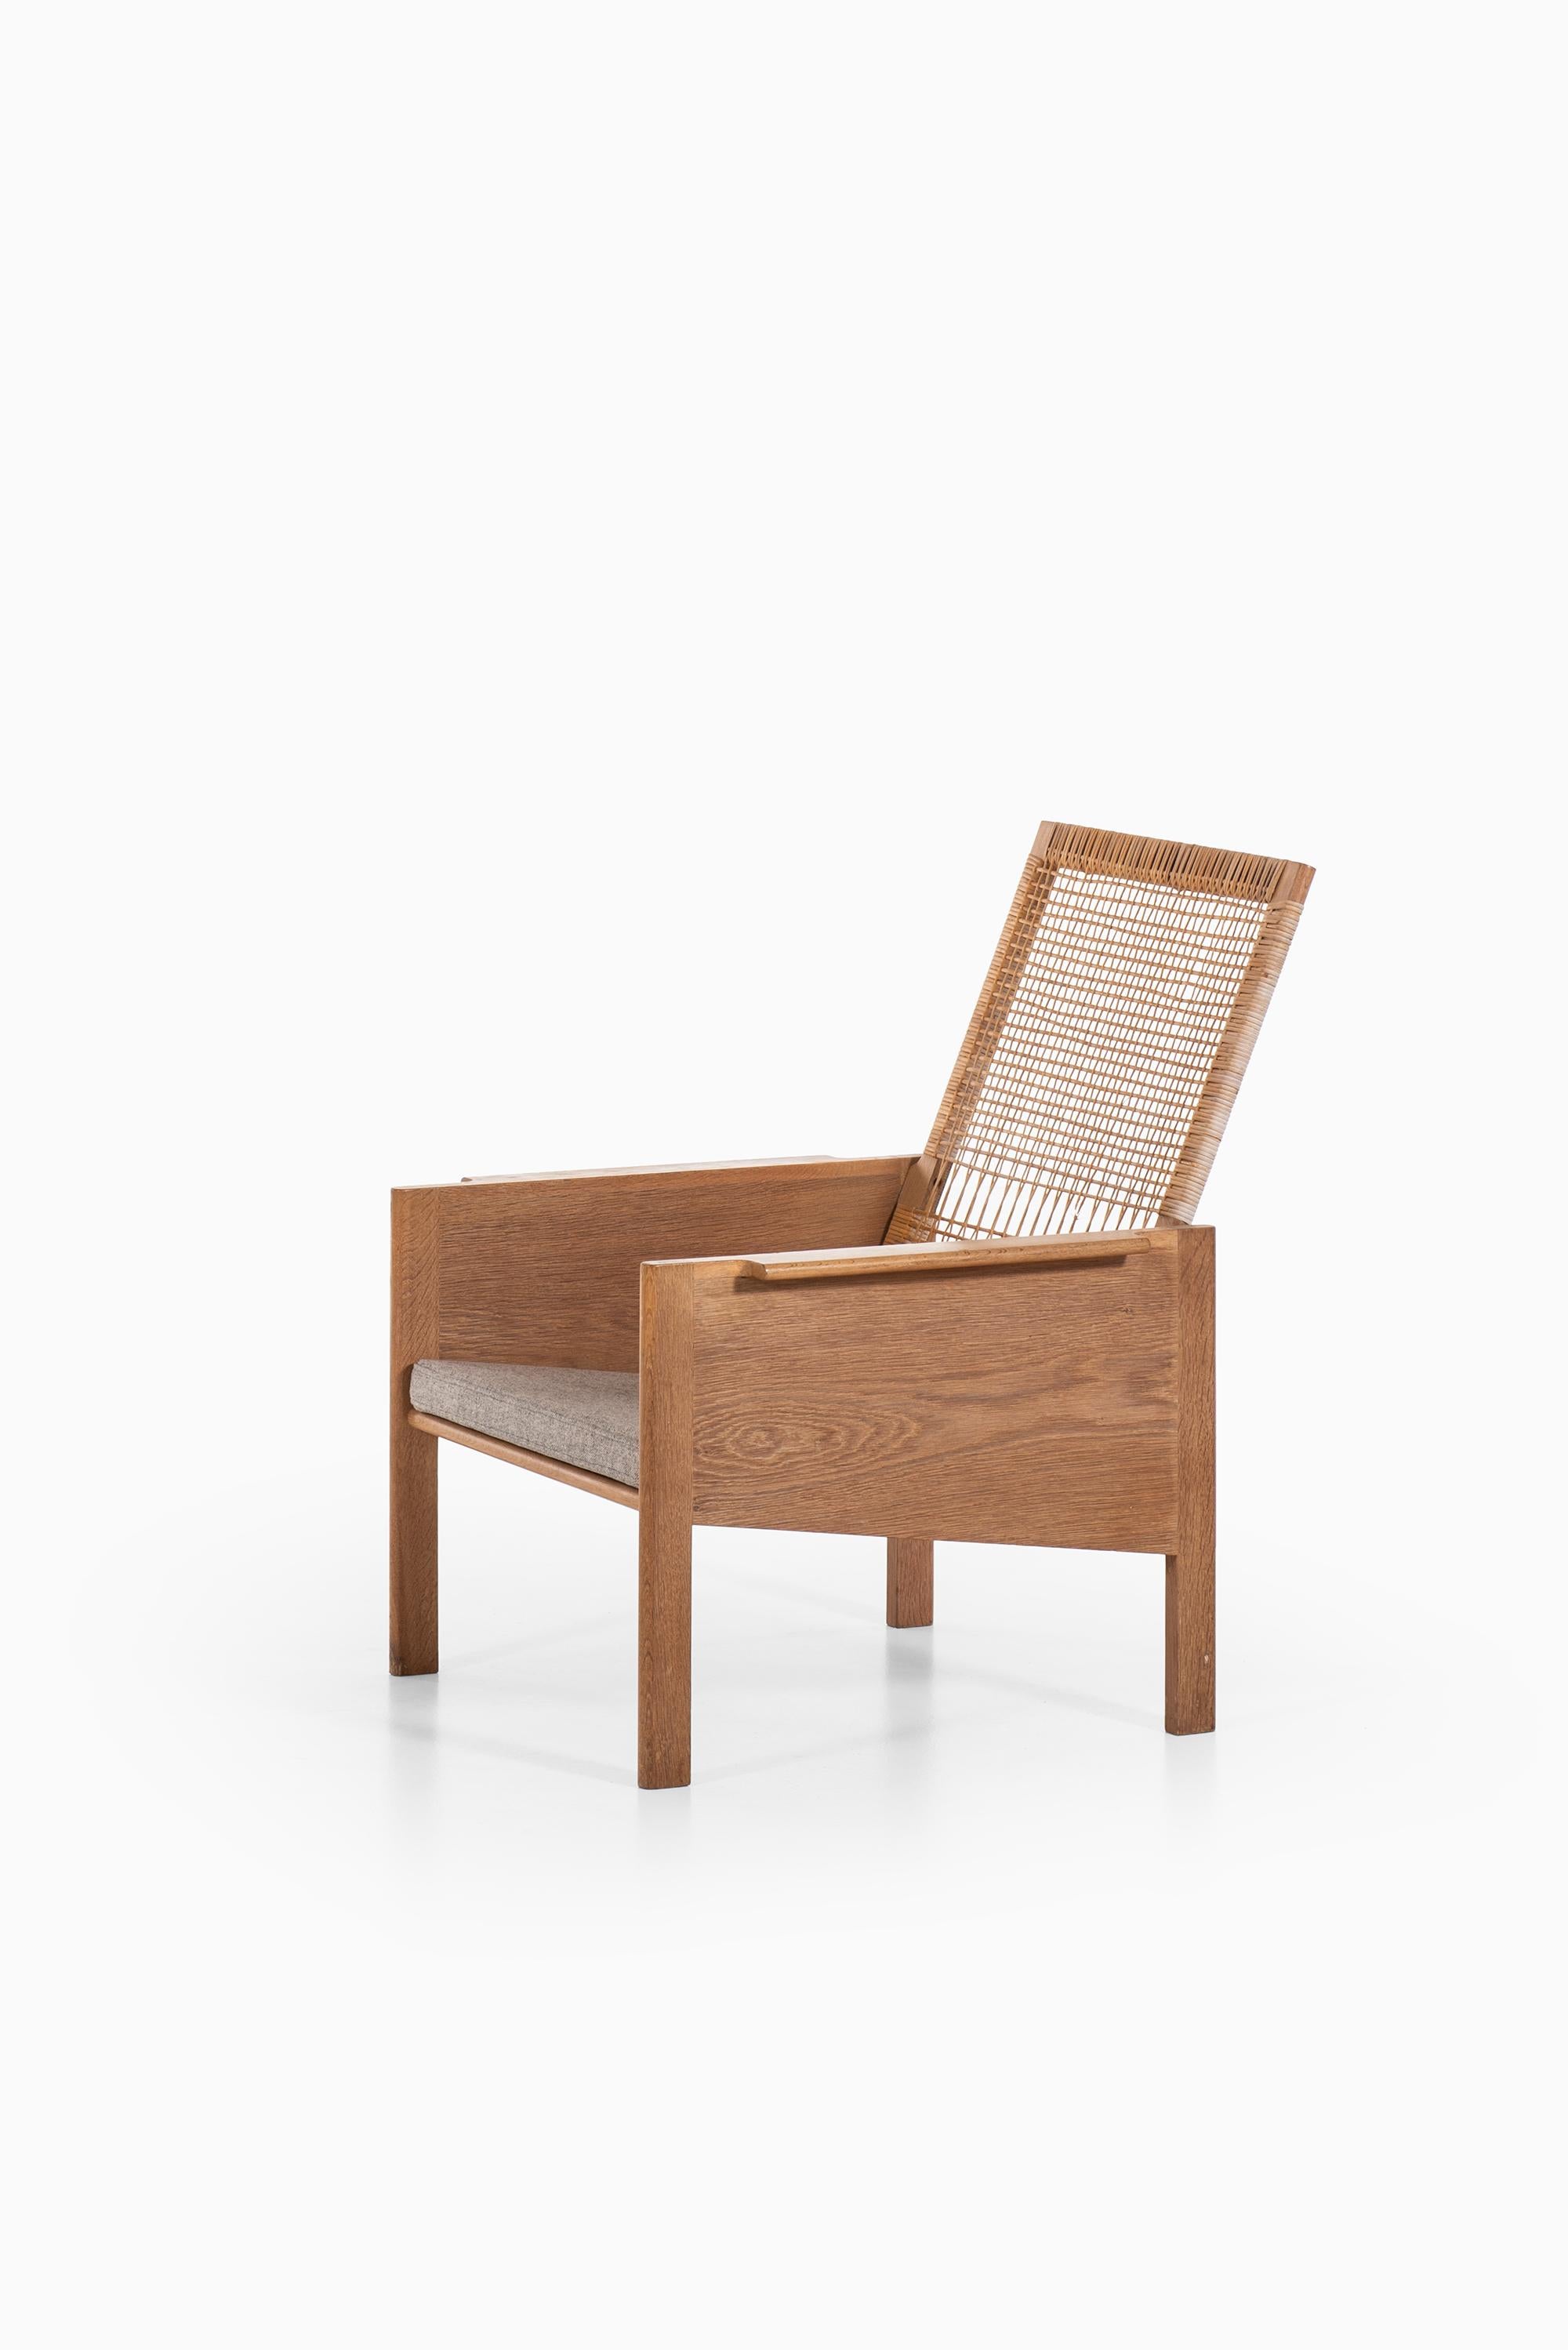 Very rare highback easy chair model 179 designed by Kai Kristiansen. Produced by Christian Jensen Møbelsnedkeri in Denmark.